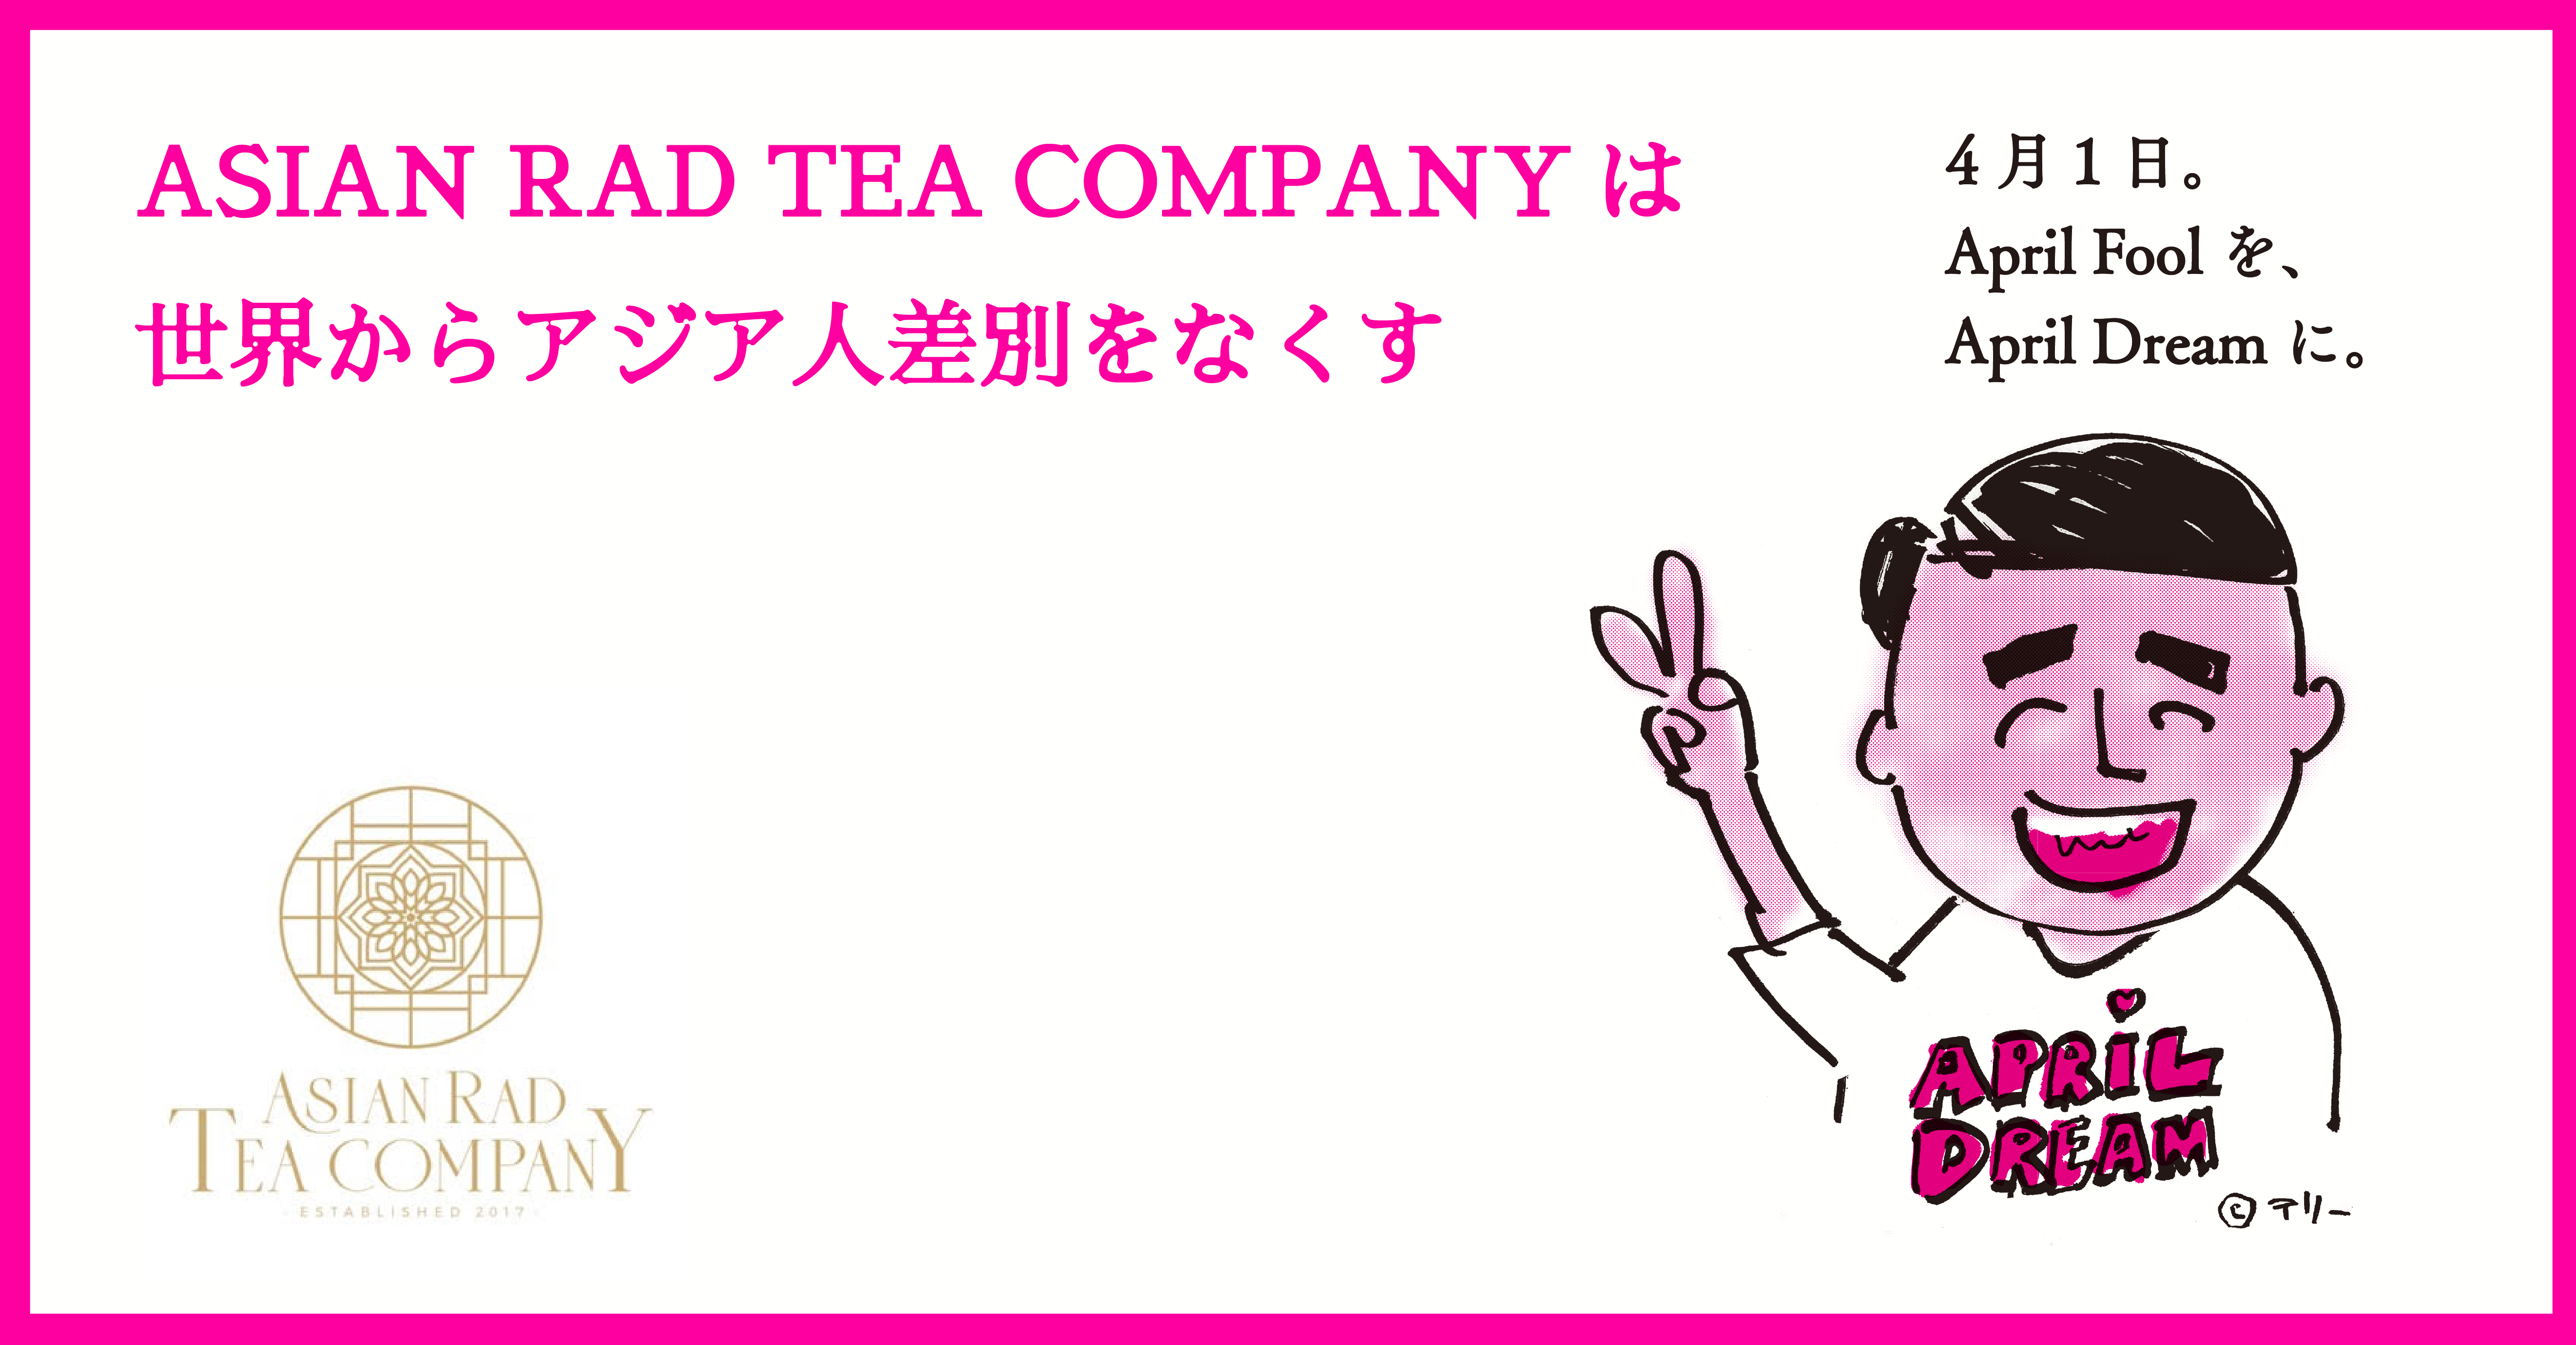 株式会社asian Rad Tea Company は世界からアジア人差別をなくし 日本人を含めたアジア人女性が世界で自立して生きていける社会にしていきます 株式会社asian Rad Tea Companyのプレスリリース